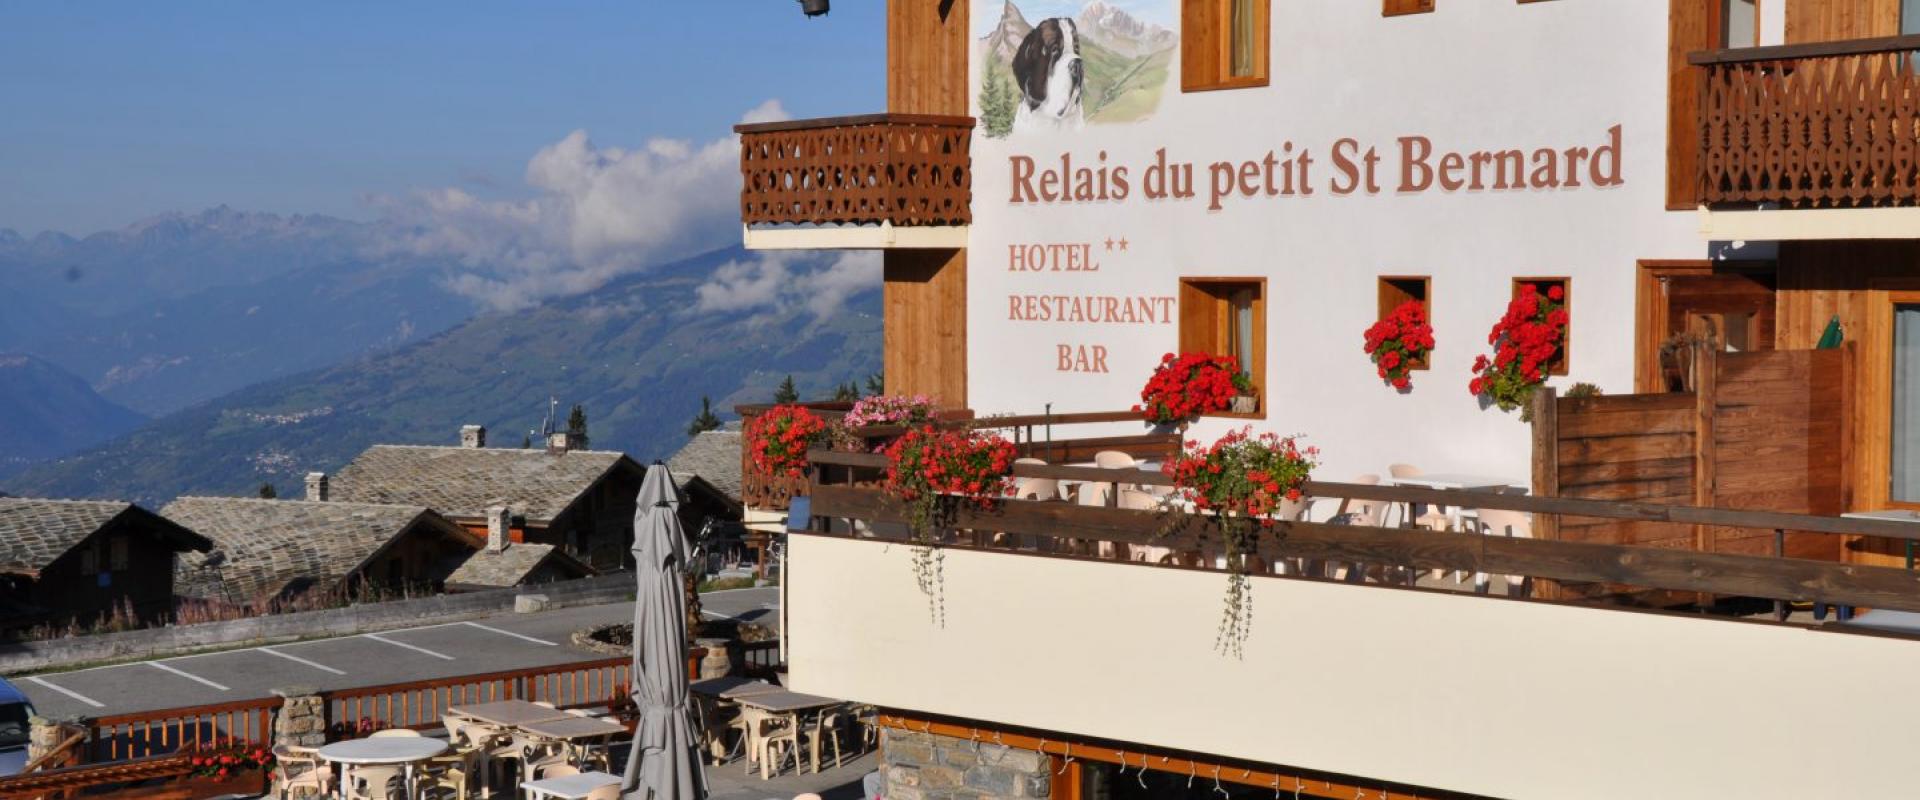 The Relais du Petit St-Bernard Hotel.jpeg